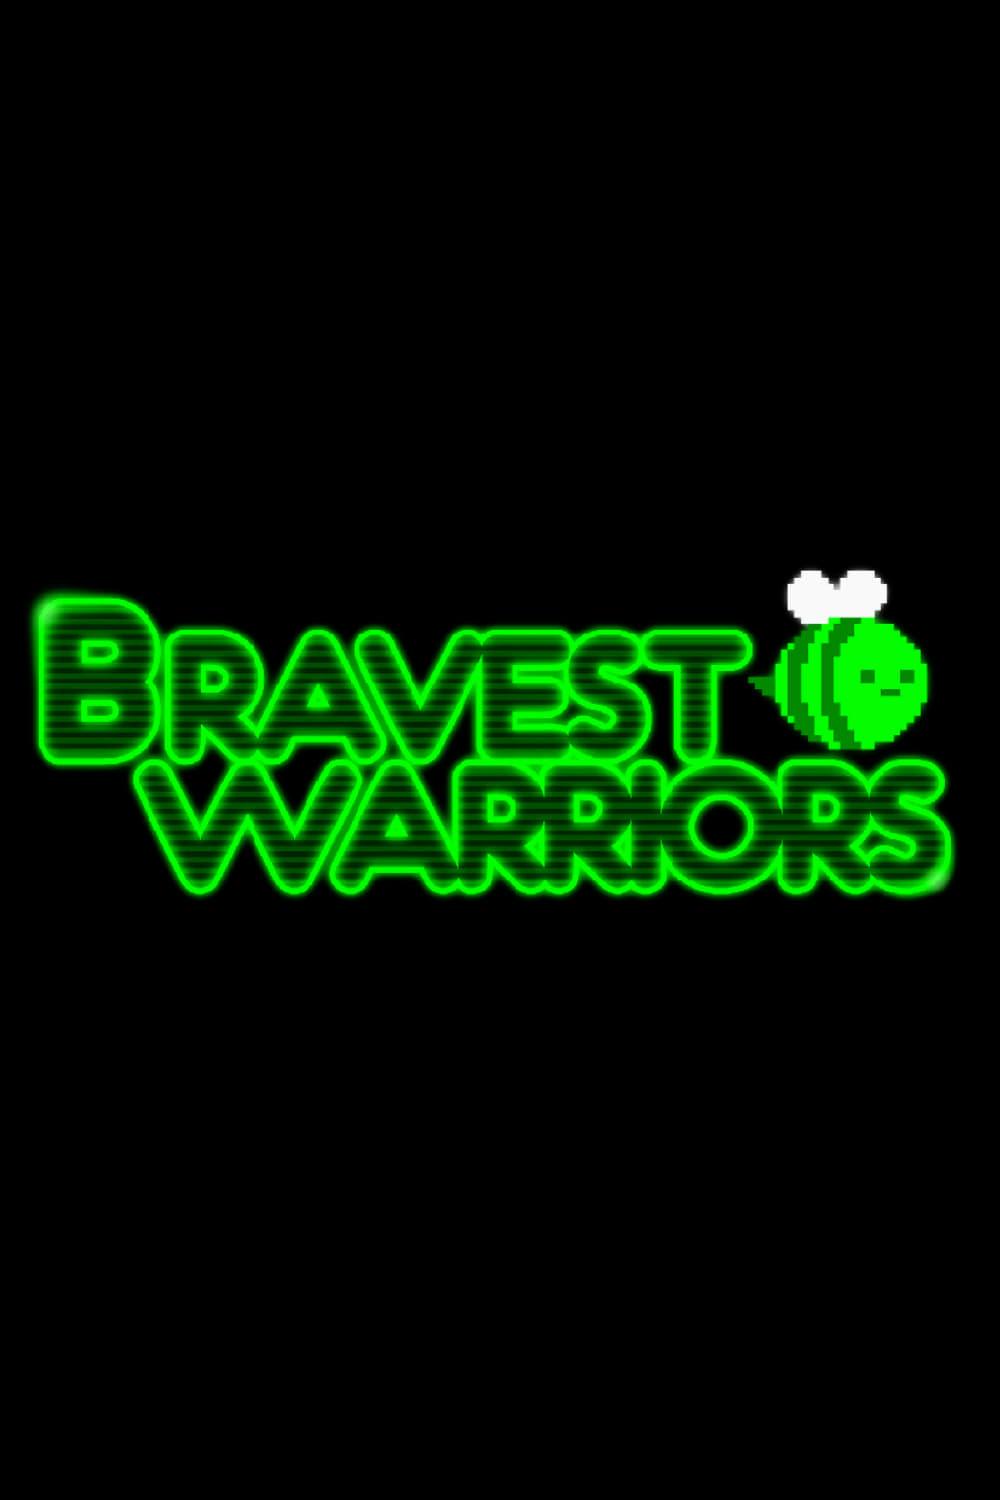 Bravest Warriors poster